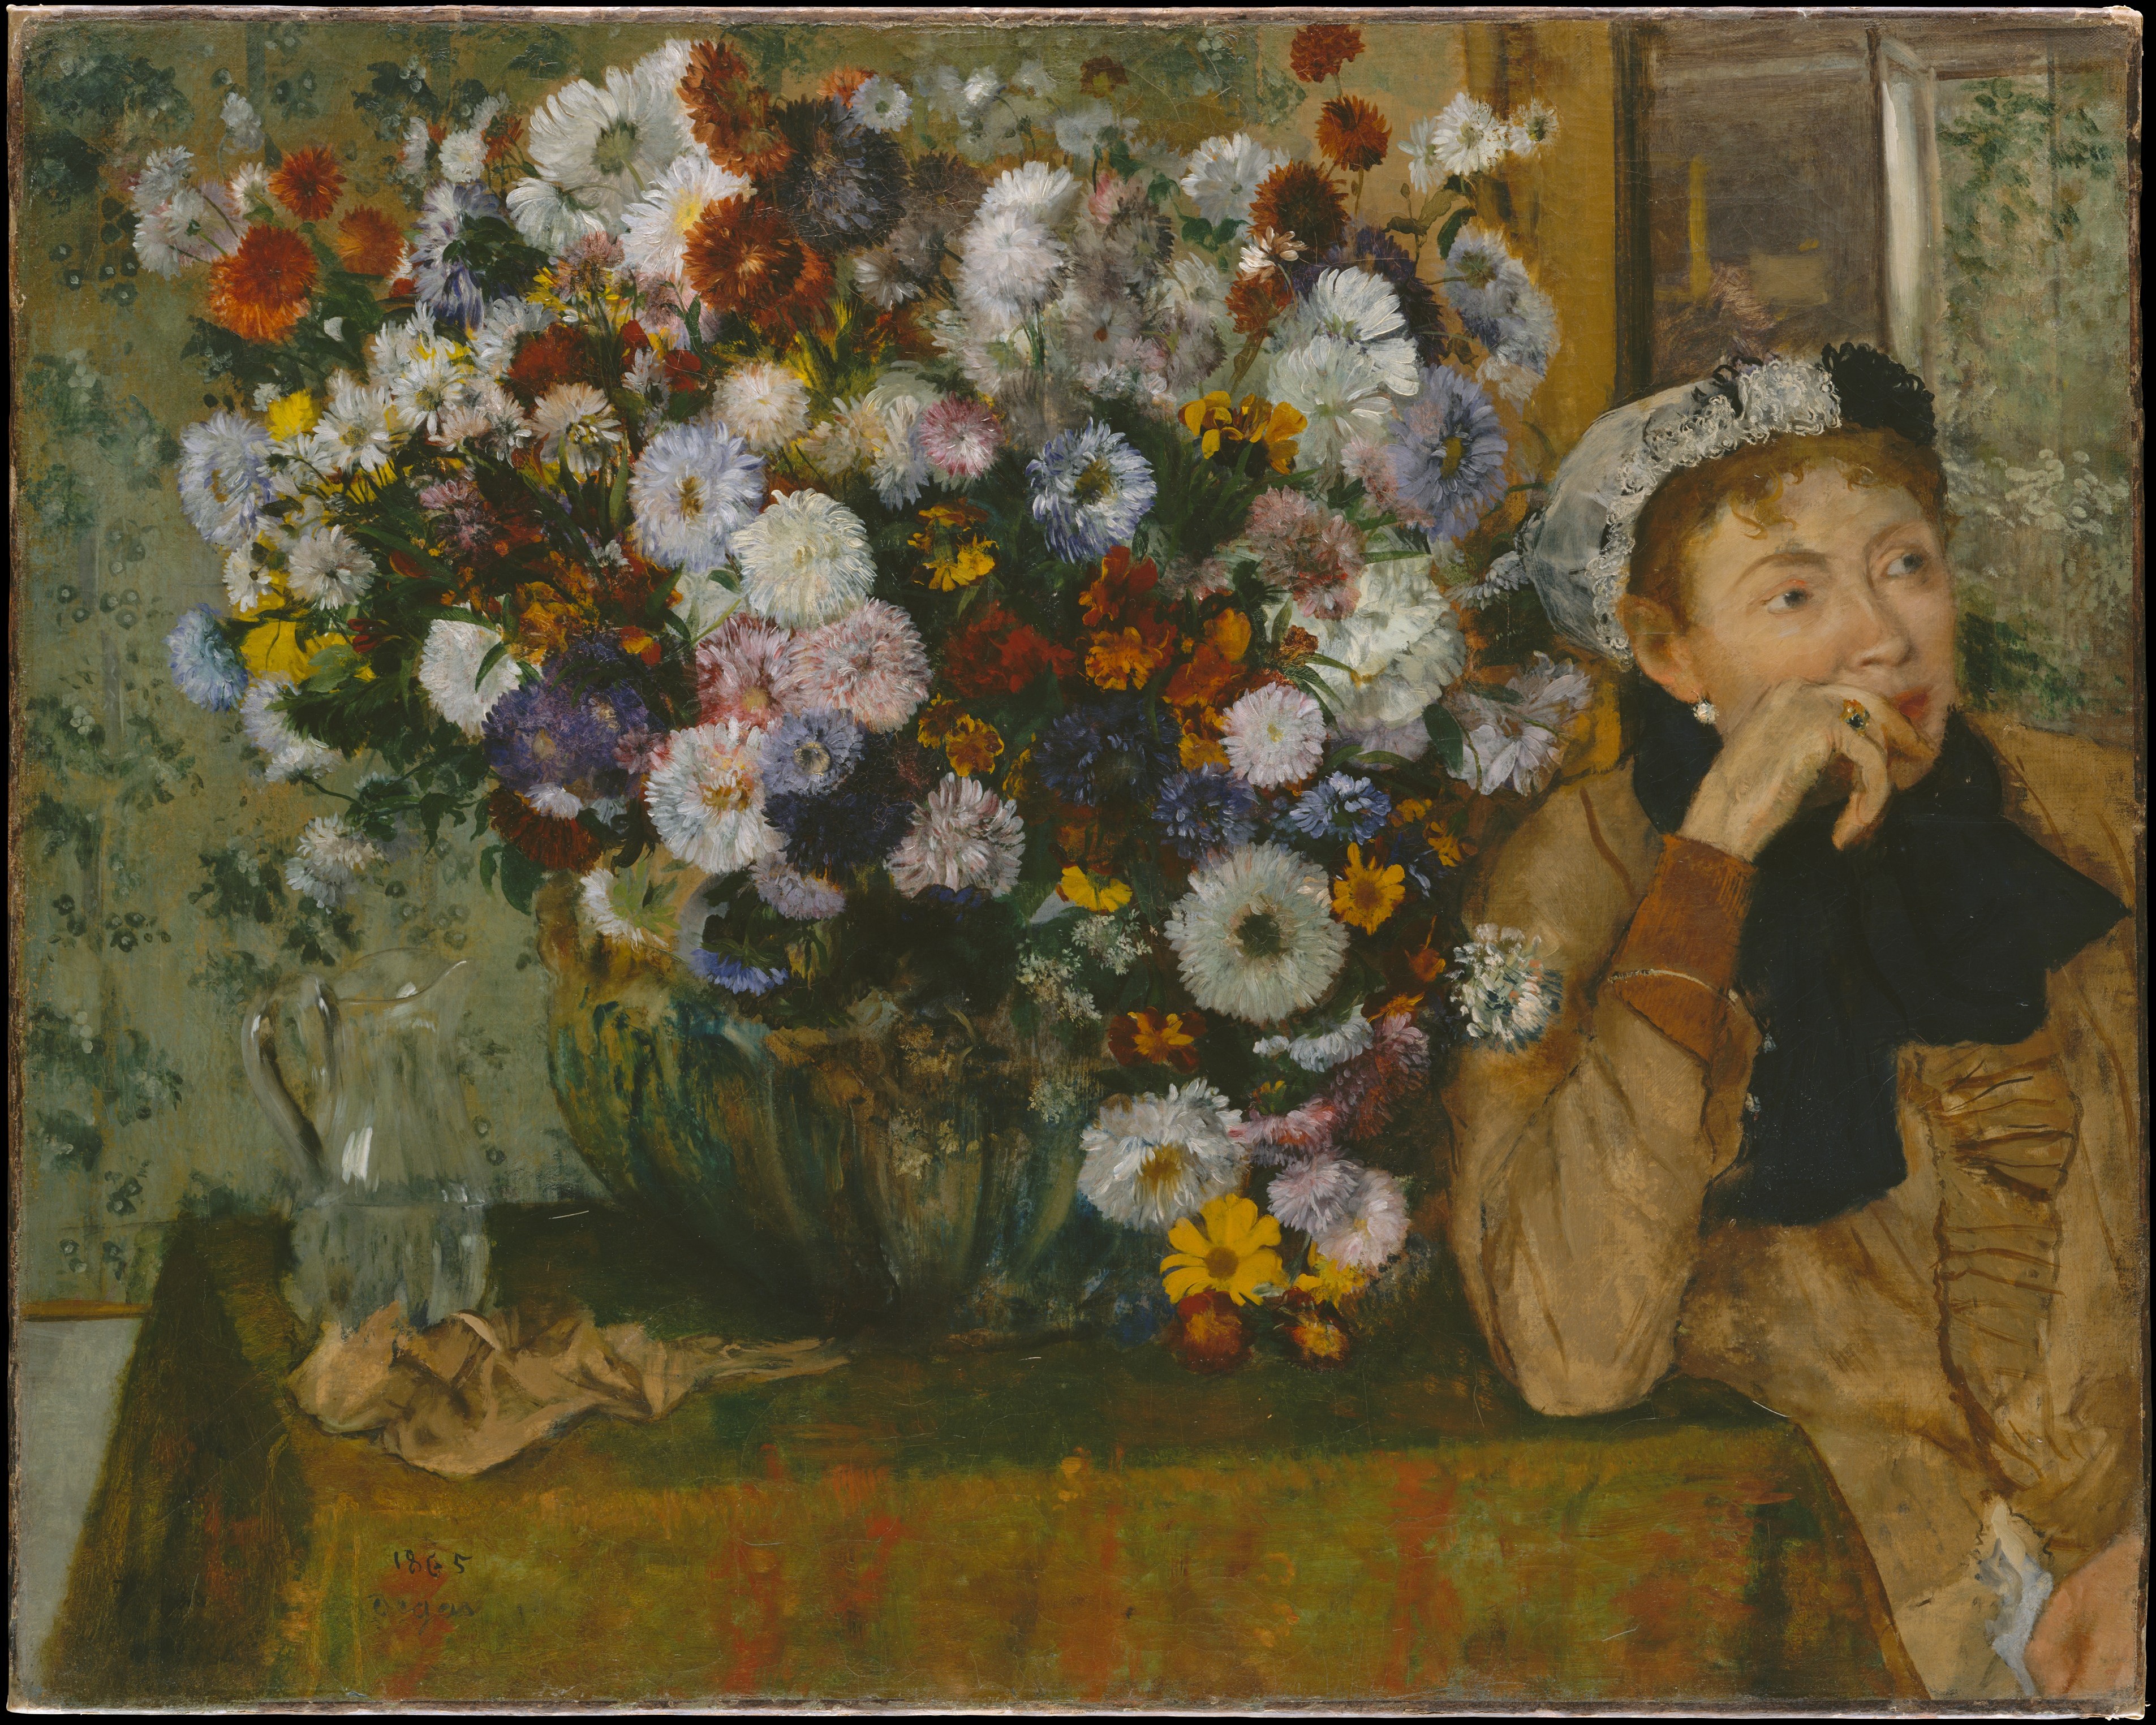 Kobieta siedząca za wazonem kwiatów (Madame Paul Valpinçon?) by Edgar Degas - 1865 - 73,7 x 92,7 cm 